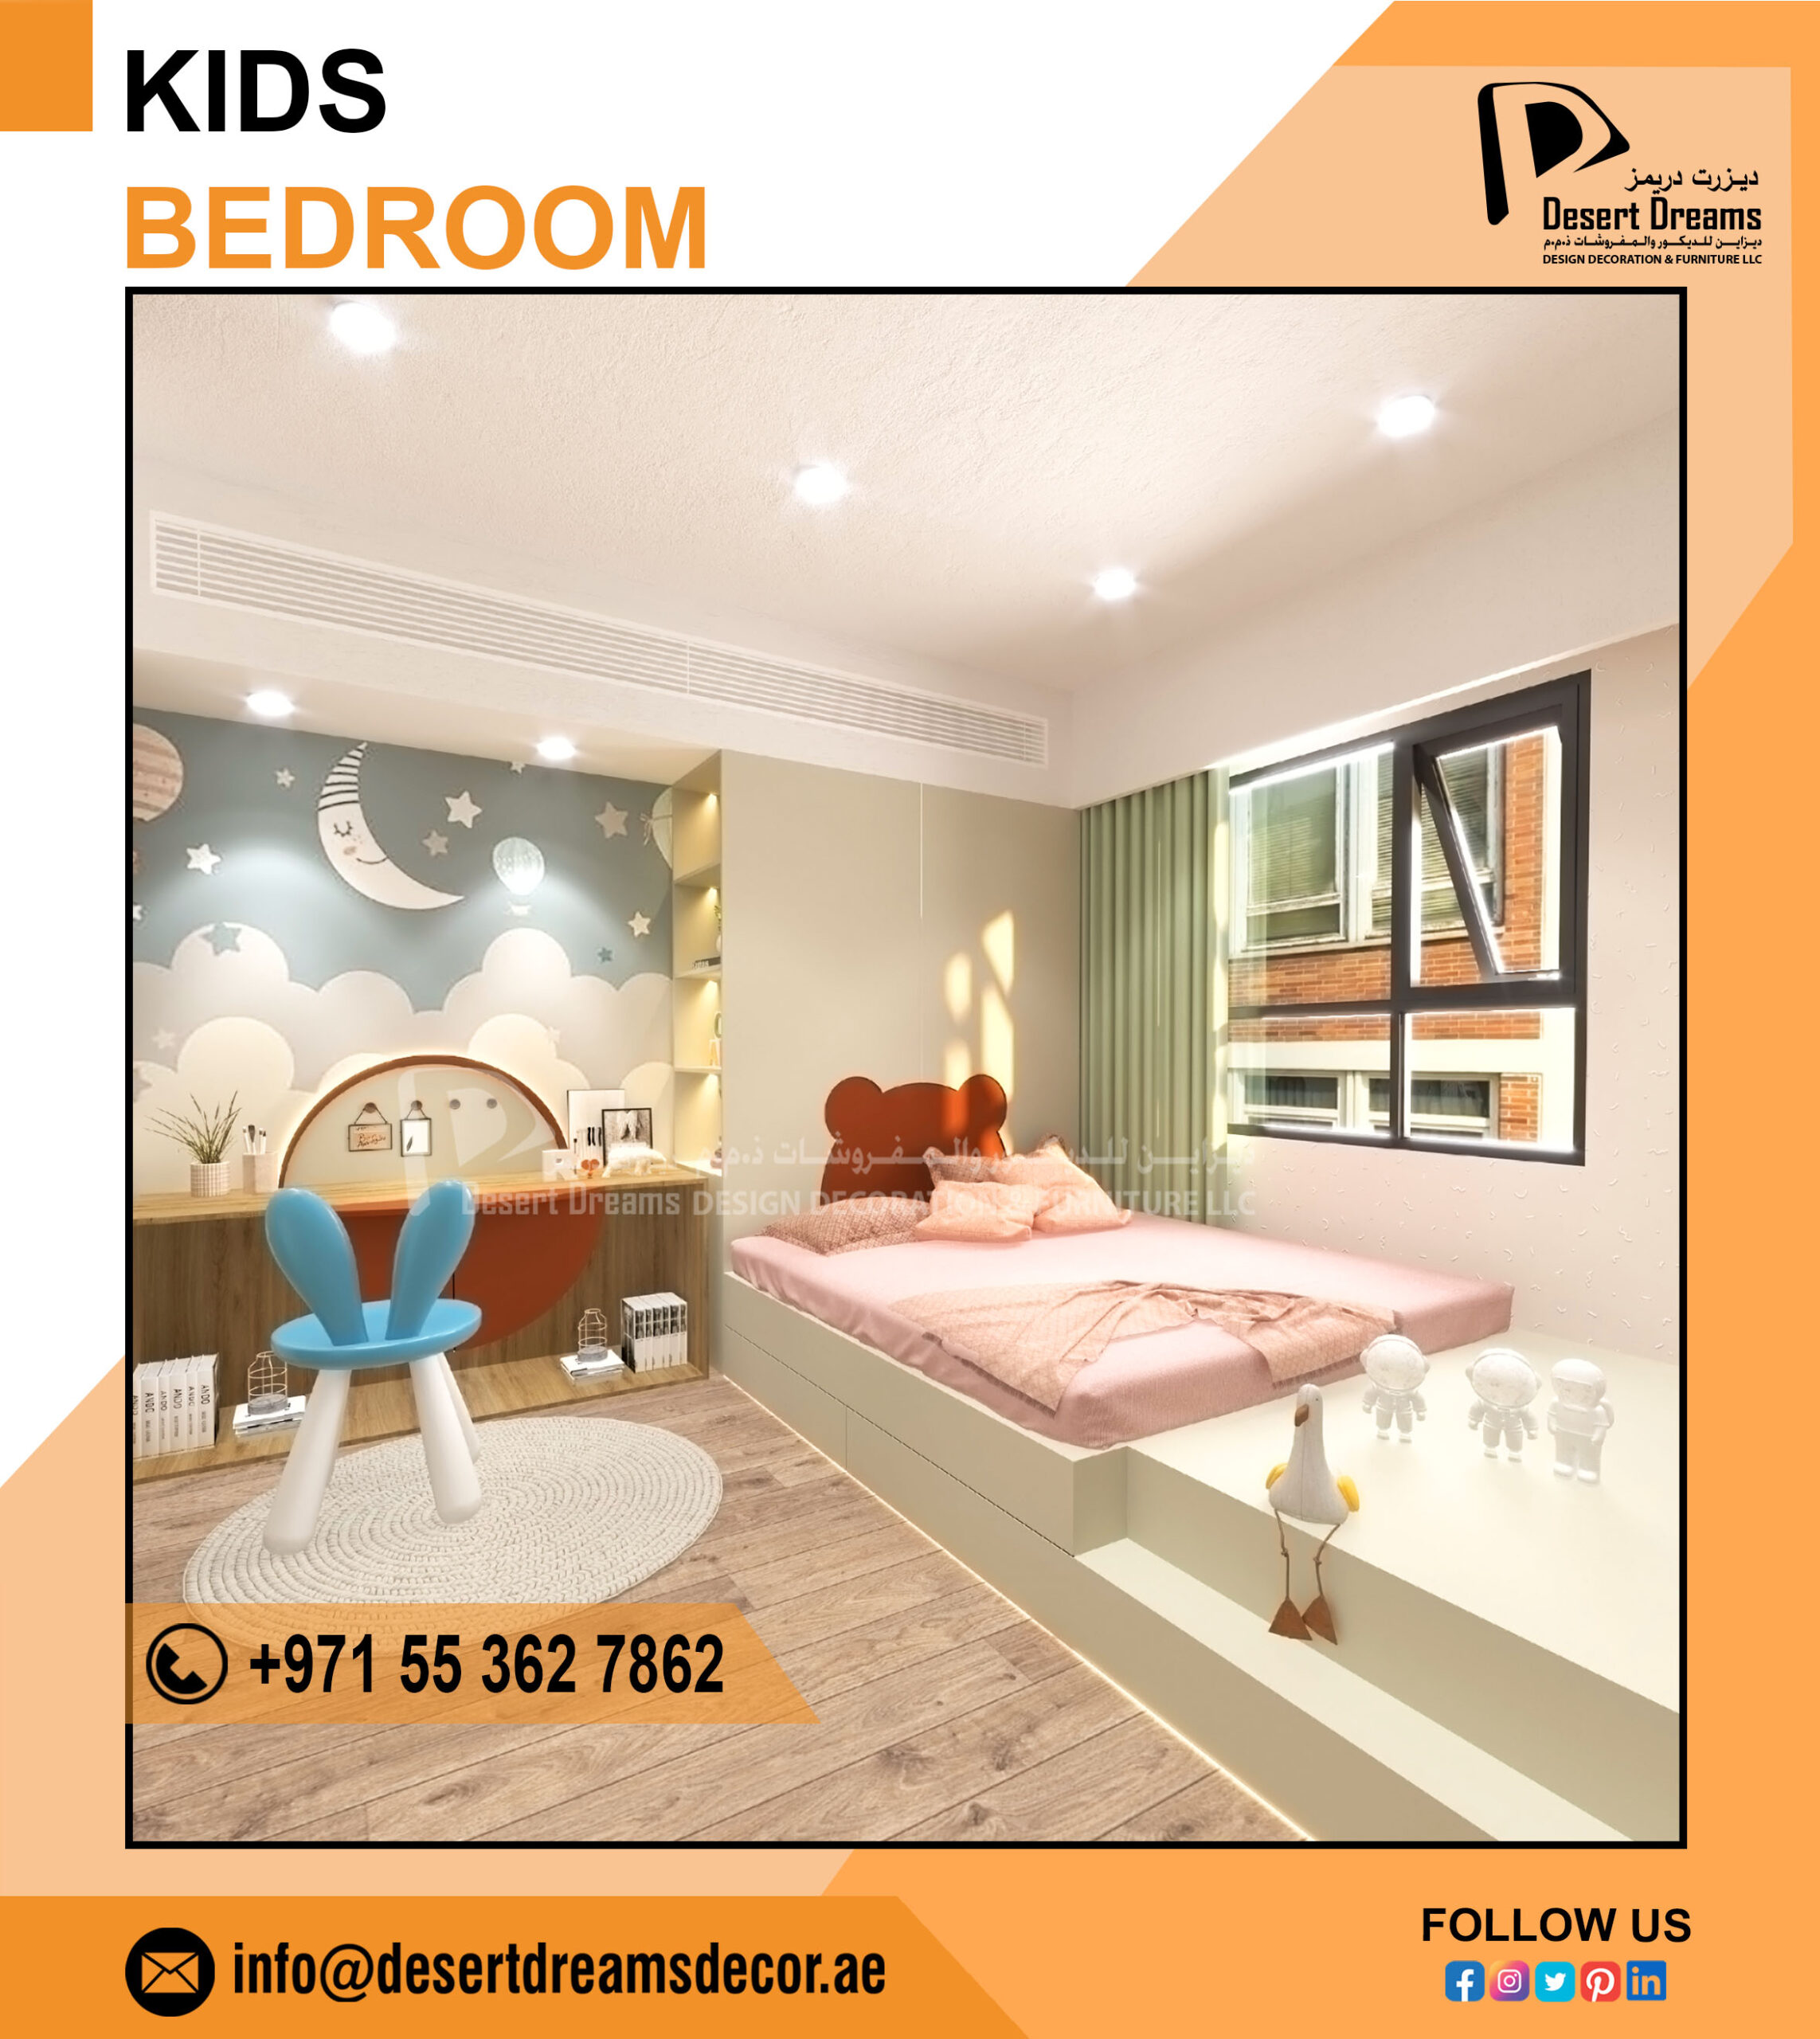 Kids Bedroom Design Uae_Dubai_Abu Dhabi (2).jpg